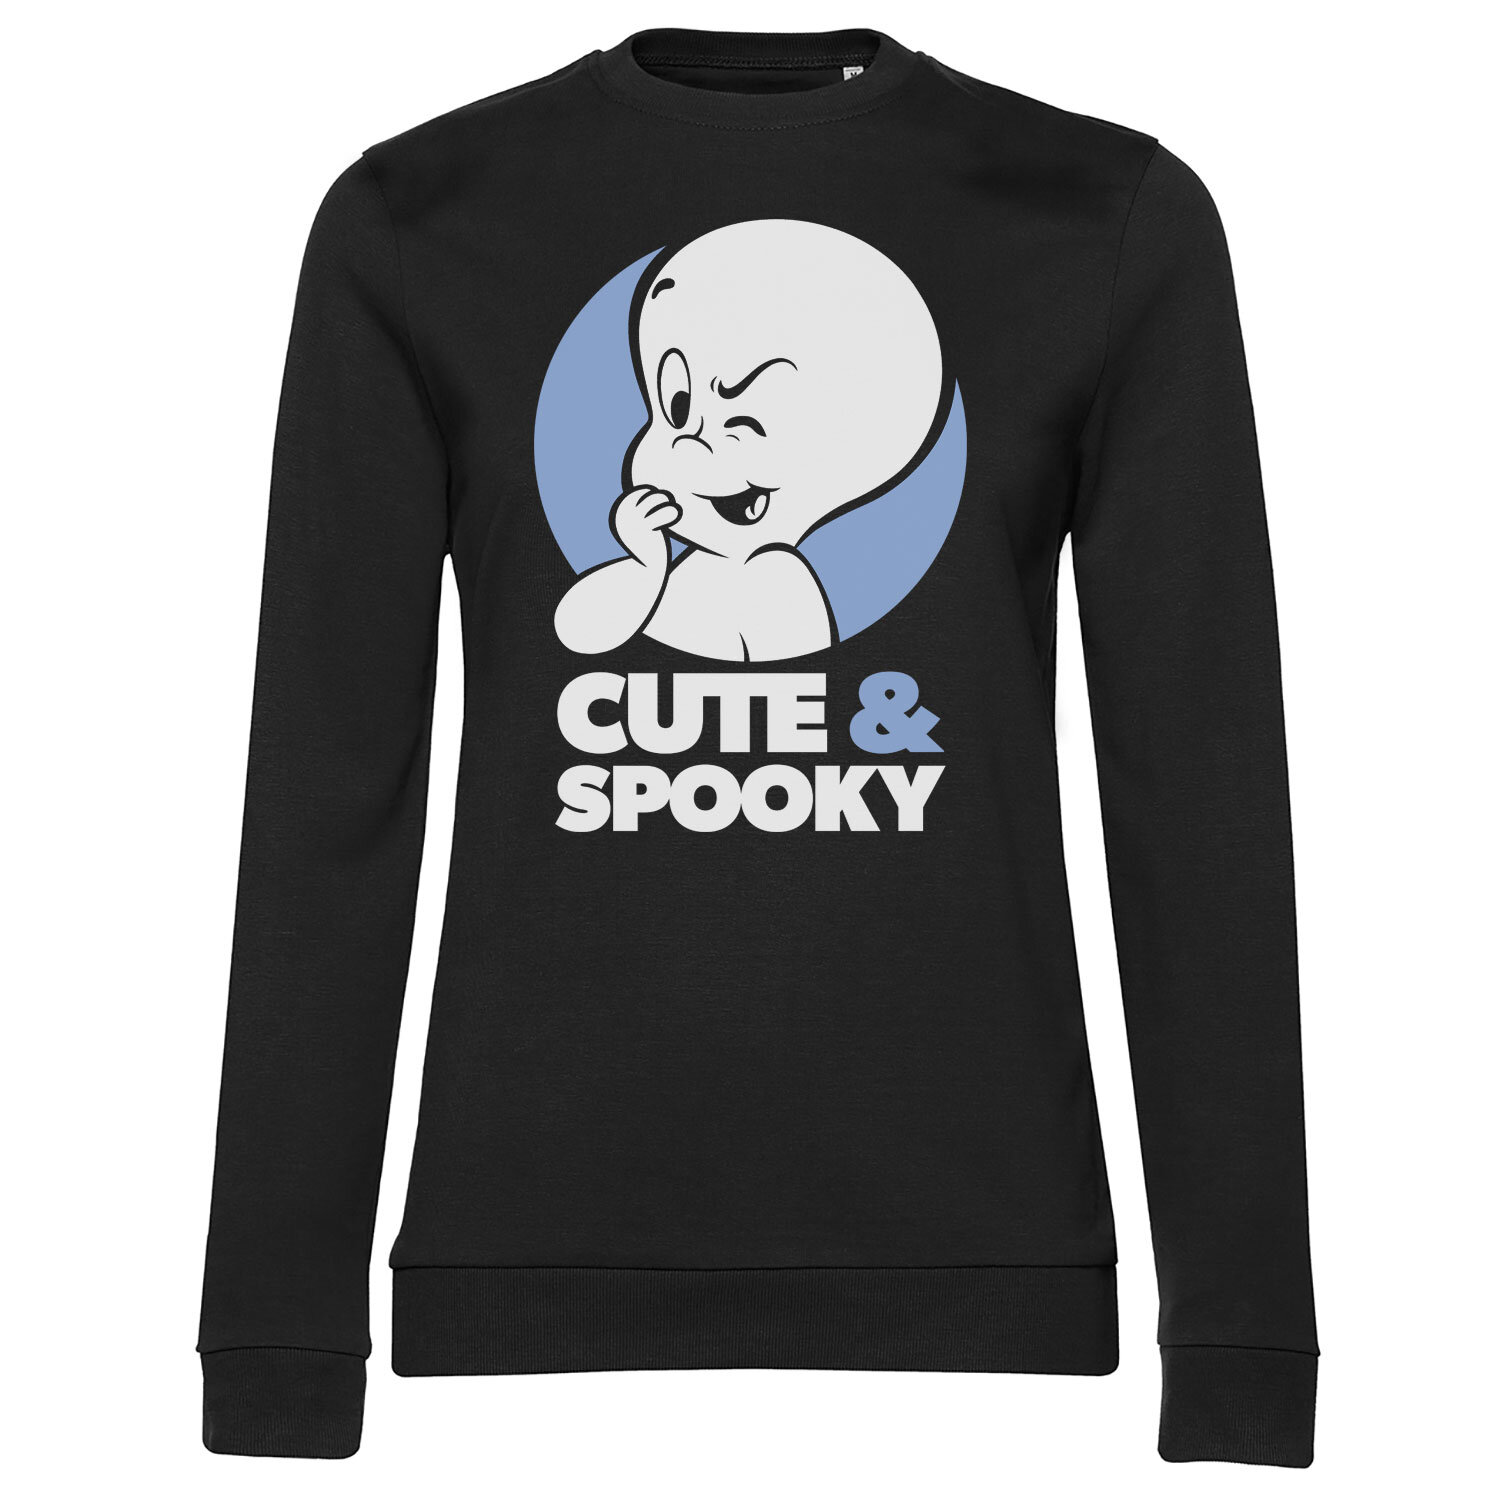 Cute & Spooky Girly Sweatshirt